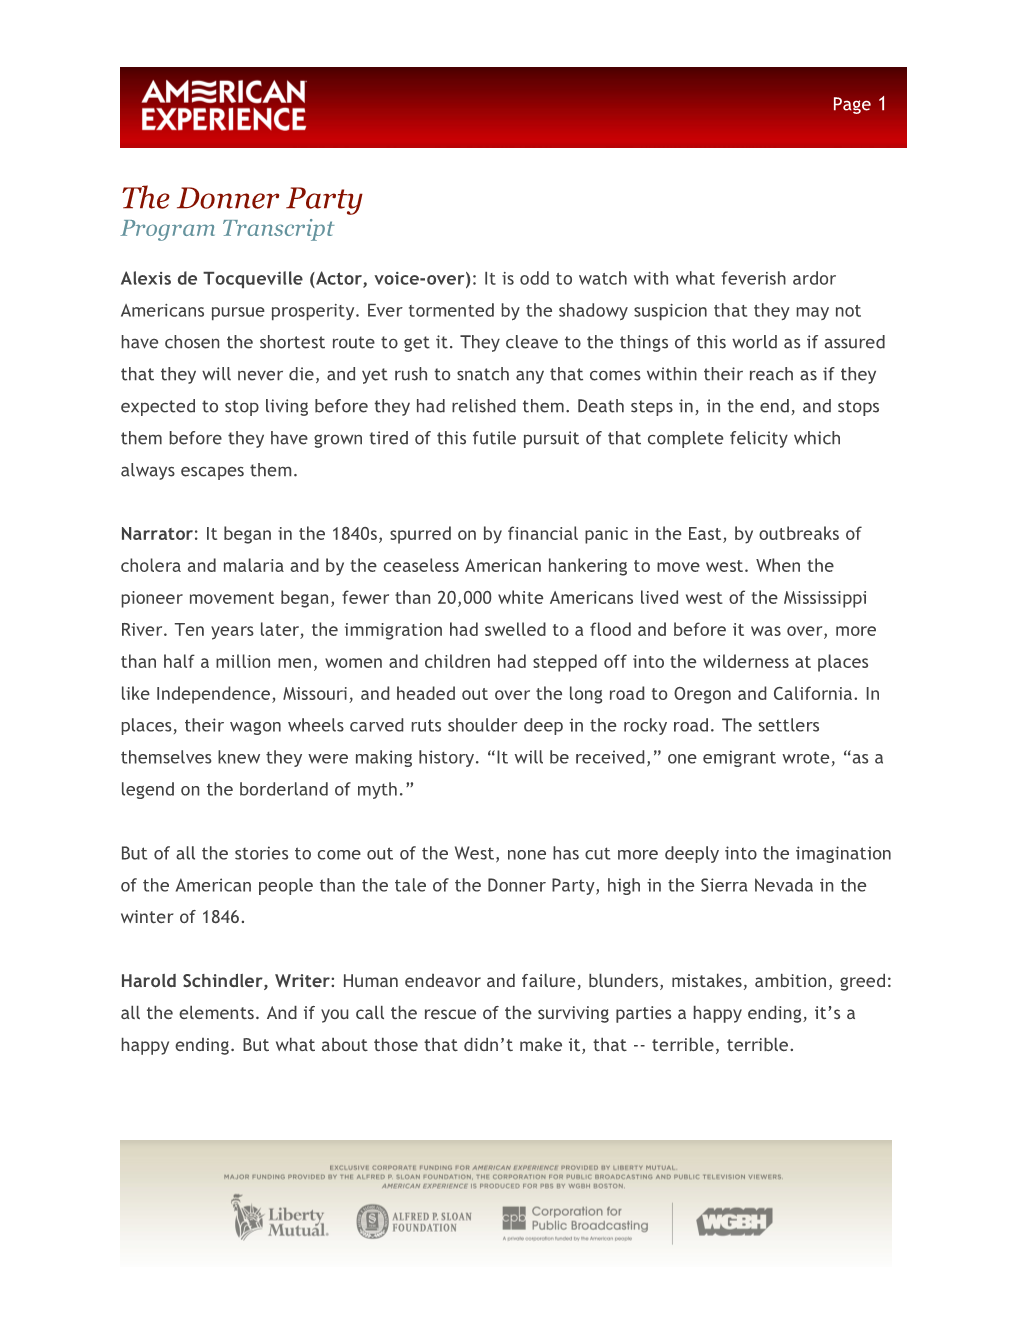 The Donner Party Program Transcript